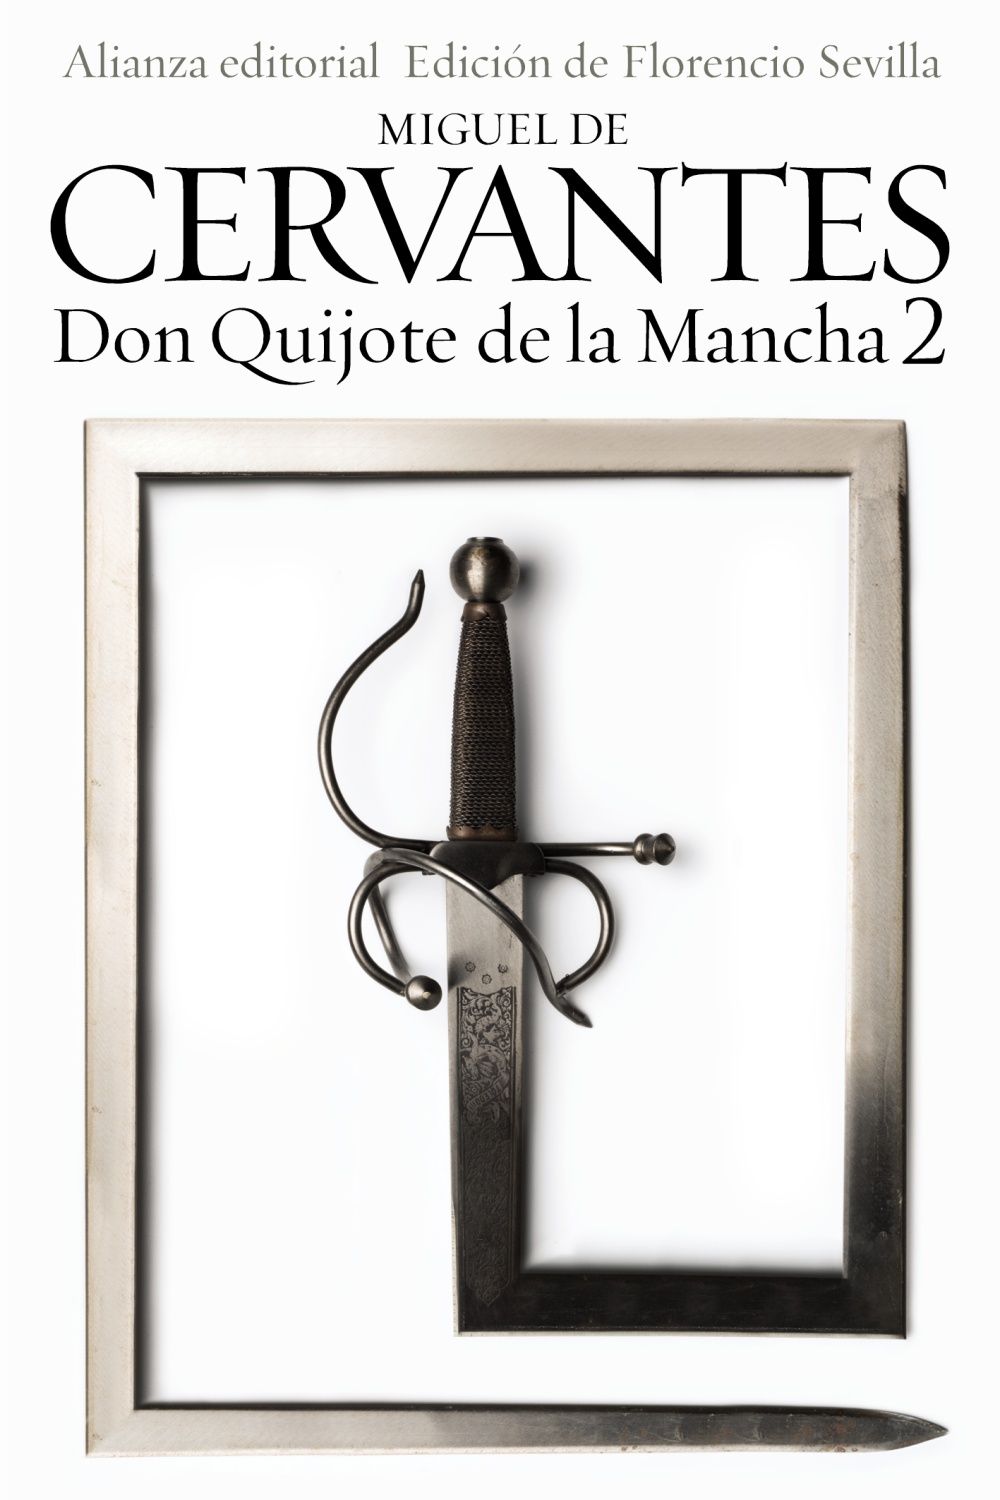 DON QUIJOTE DE LA MANCHA 2. 